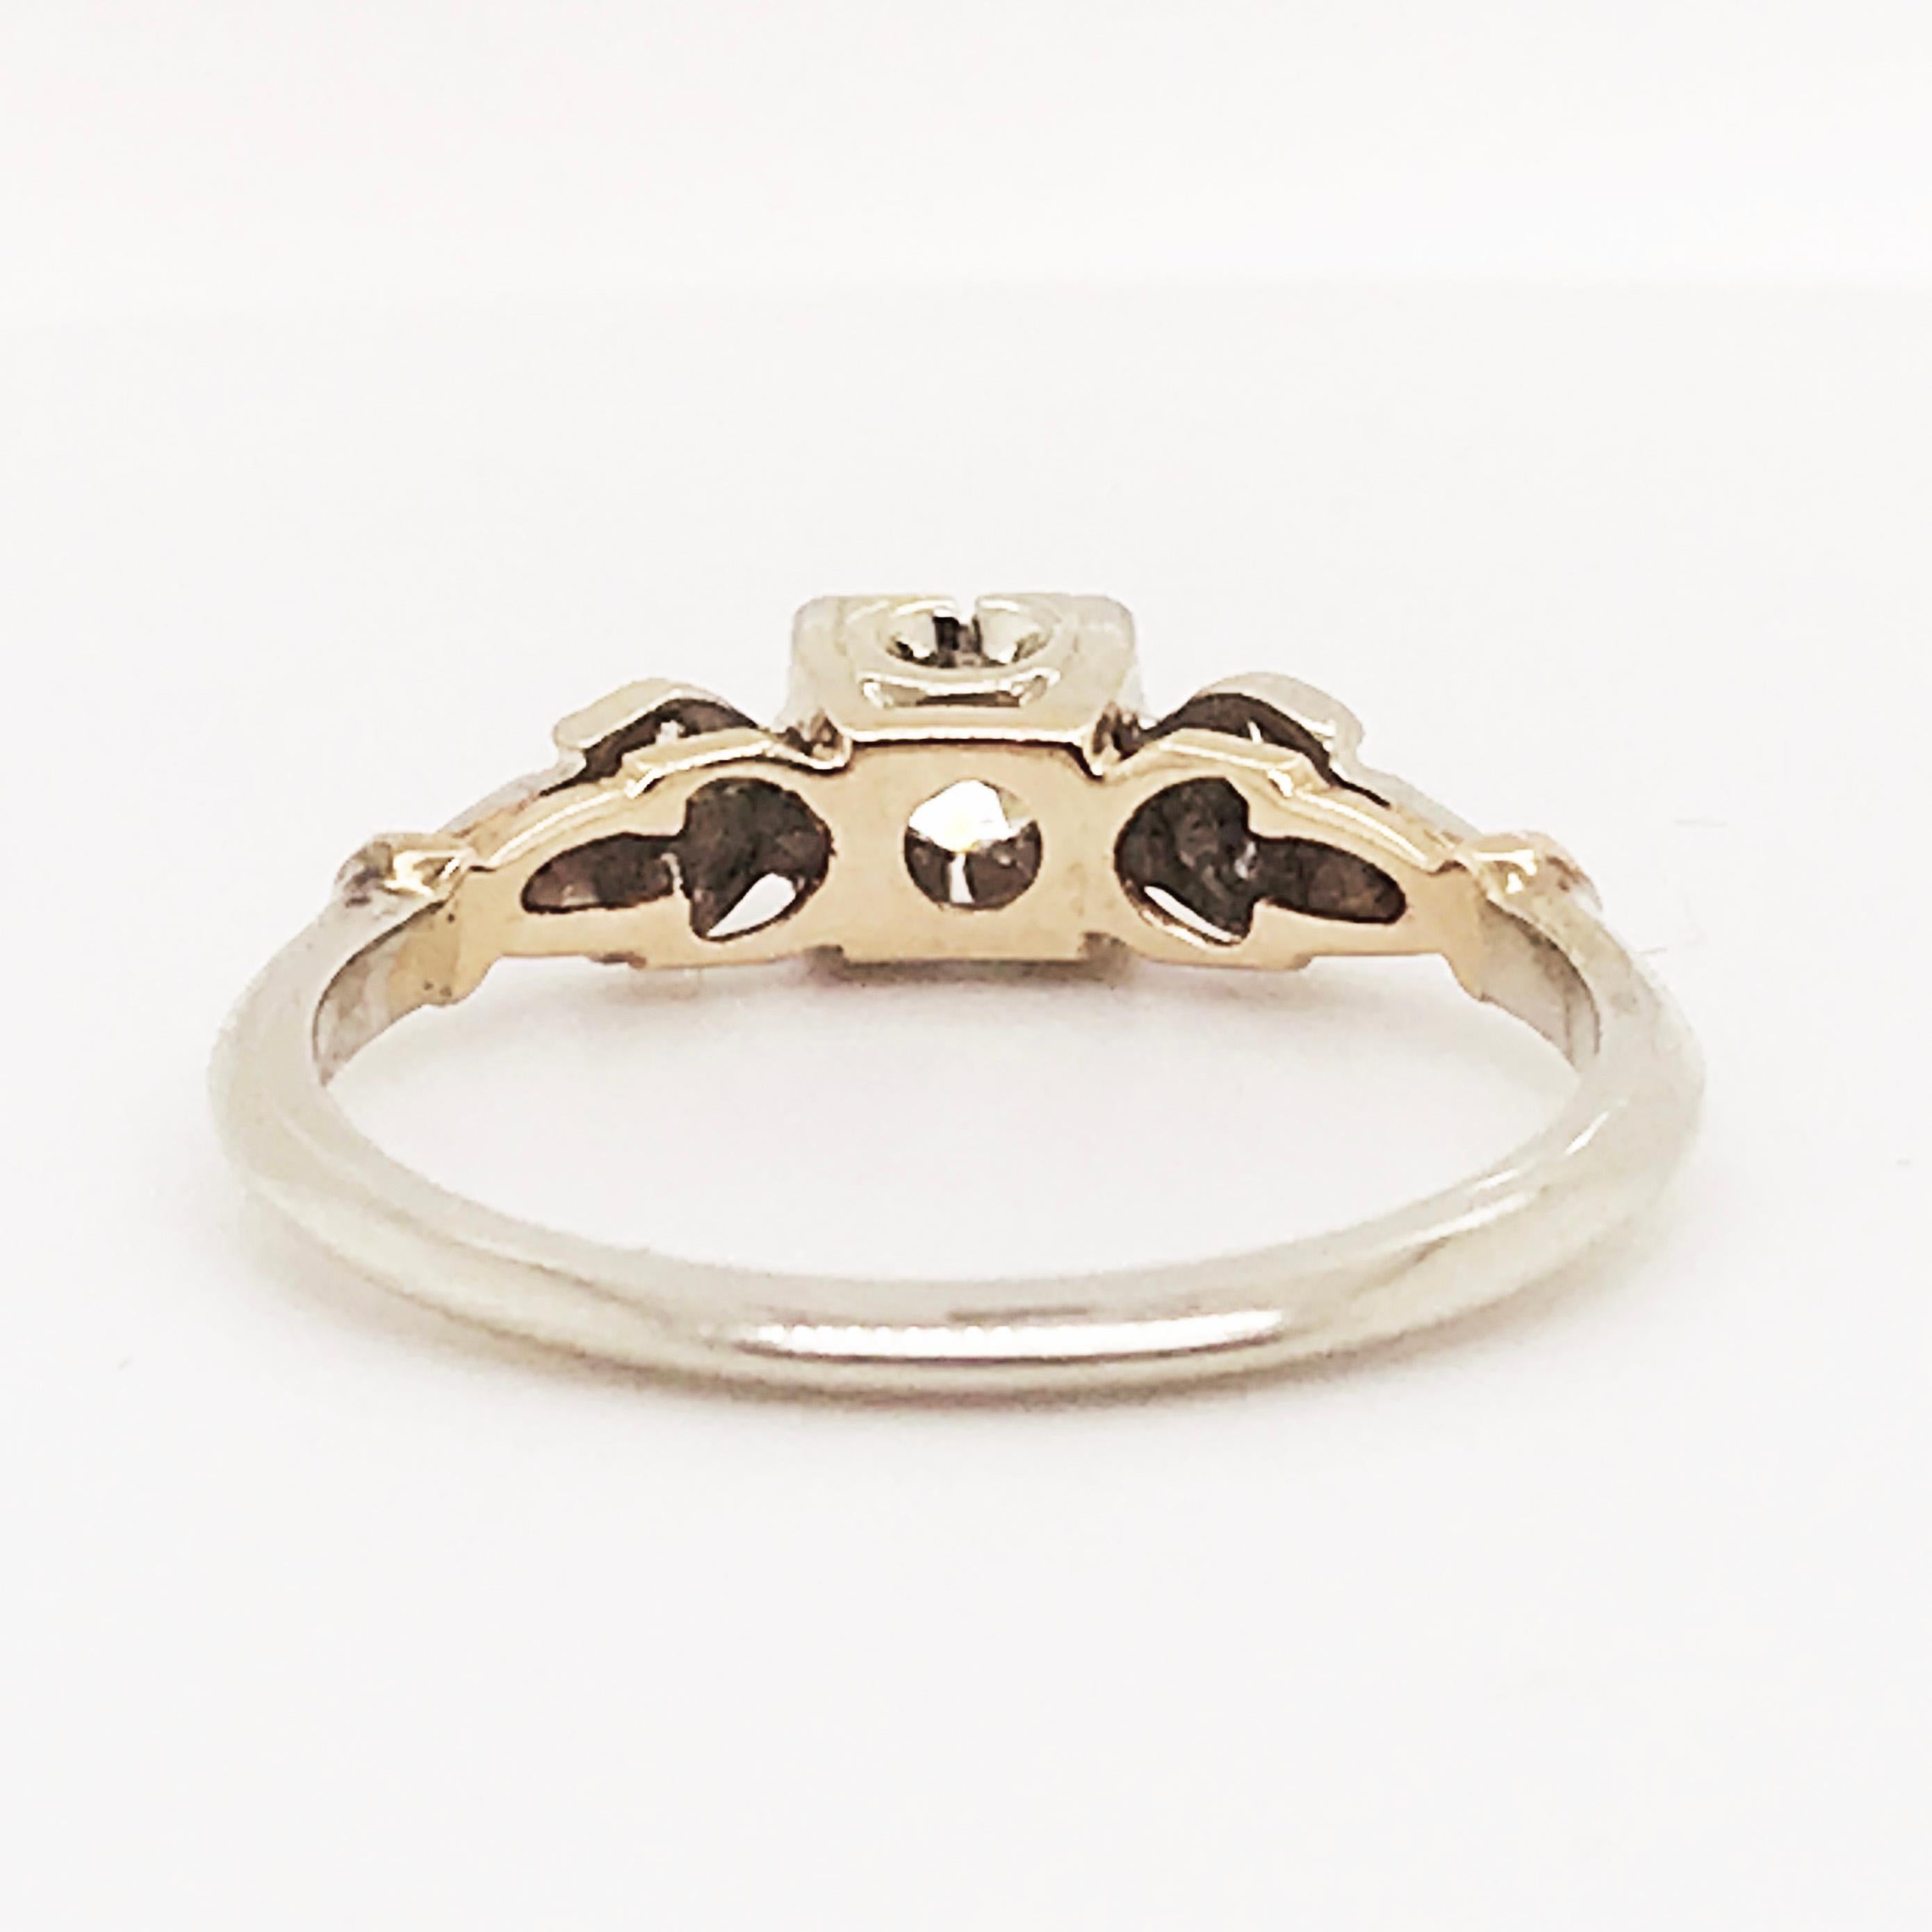 Women's Diamond Estate Ring 14 Karat White and Yellow Gold Vintage Ring, circa 1940